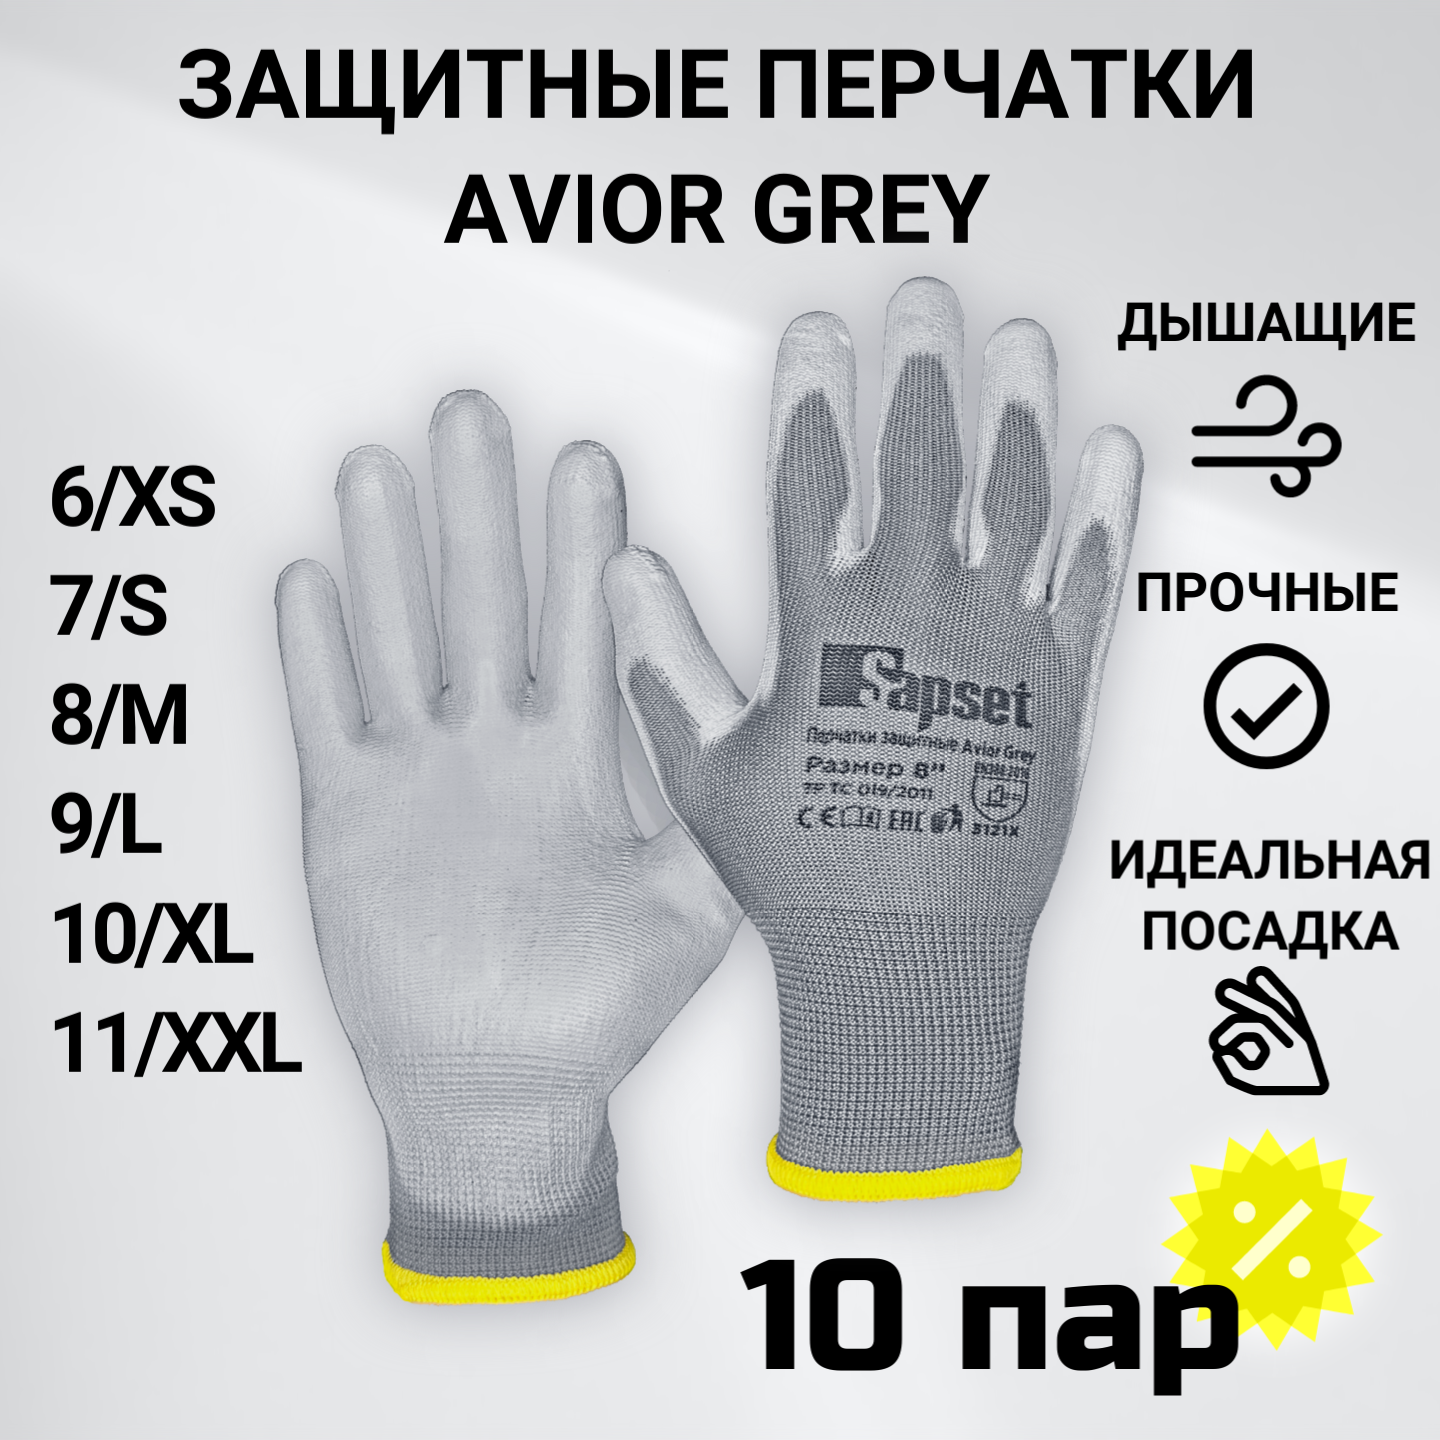 Перчатки рабочие с покрытием из полиуретана Sapset Avior Grey размер M/8 - 10 пар